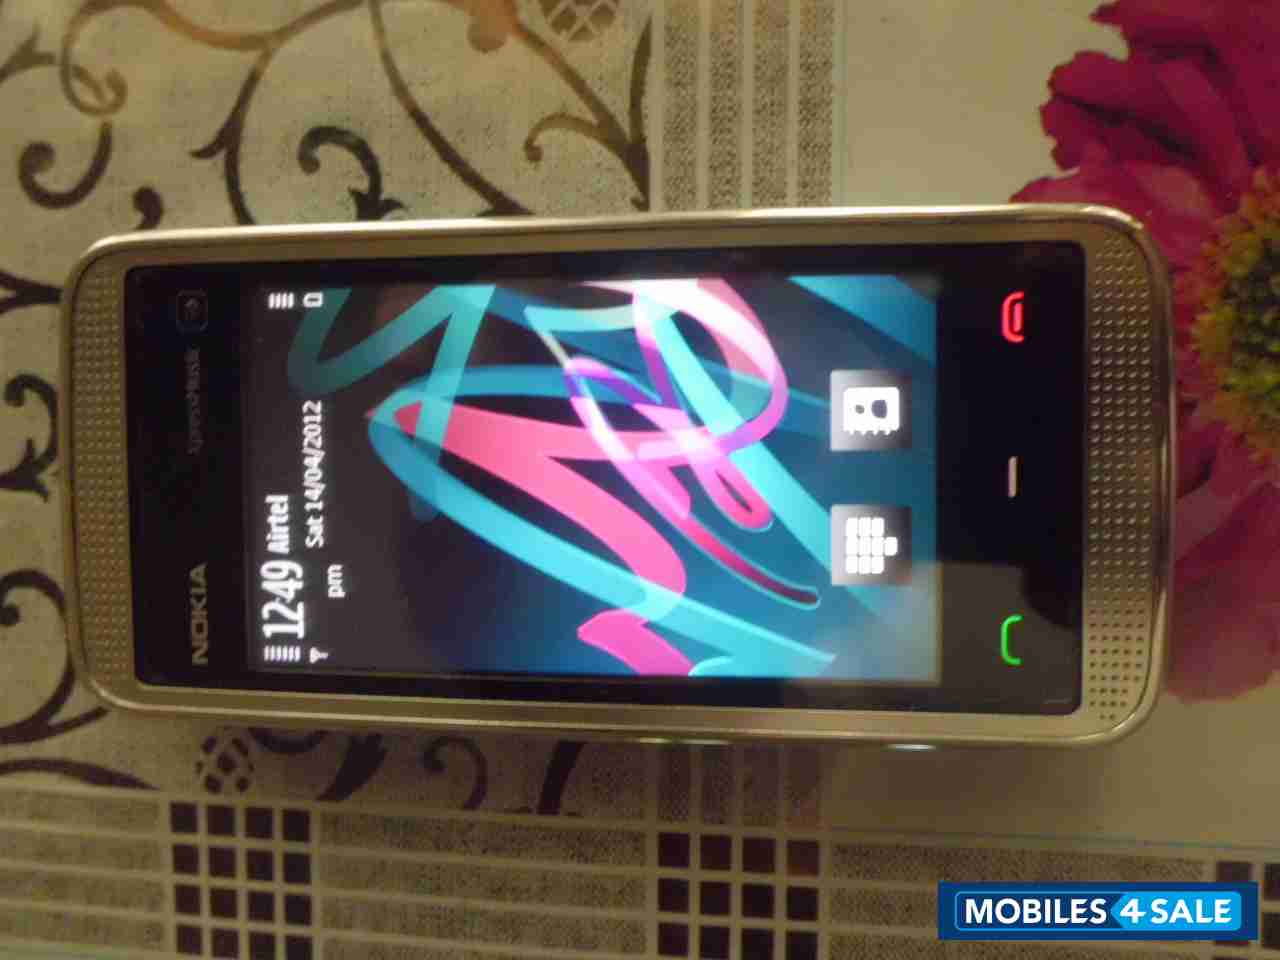 White Nokia XpressMusic 5530